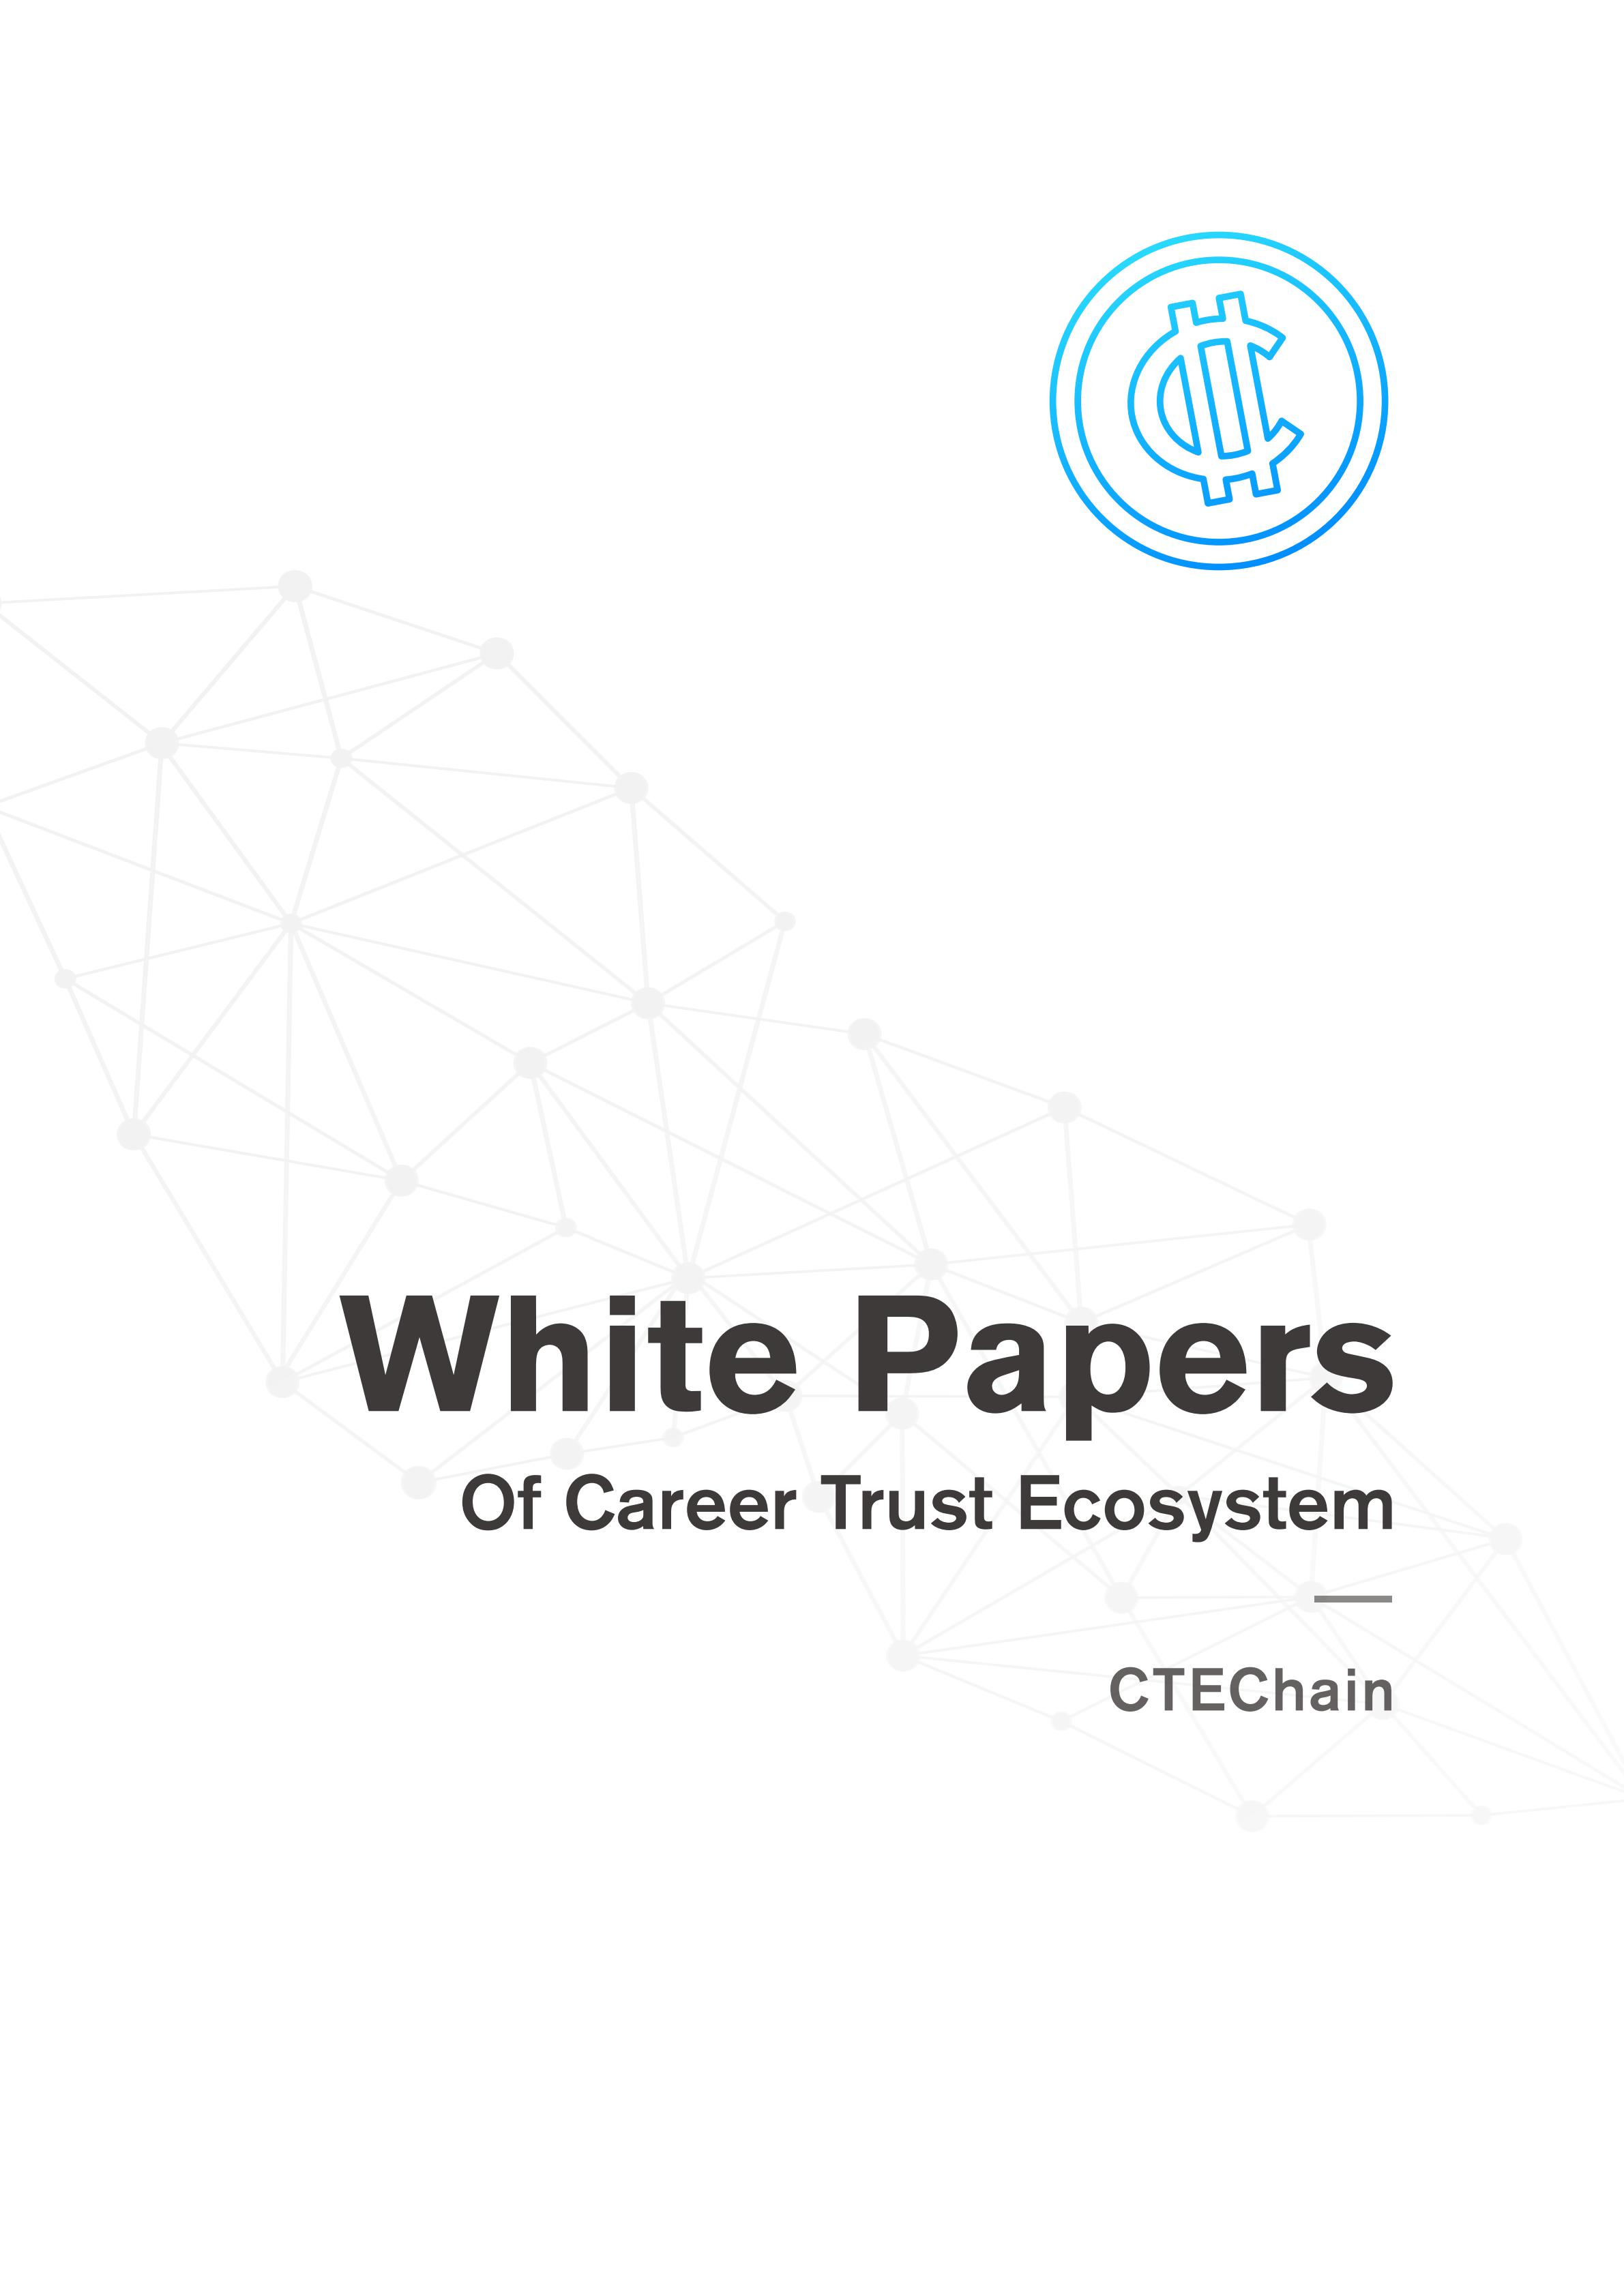 CTE_White Papers of CTEChain_00.jpg